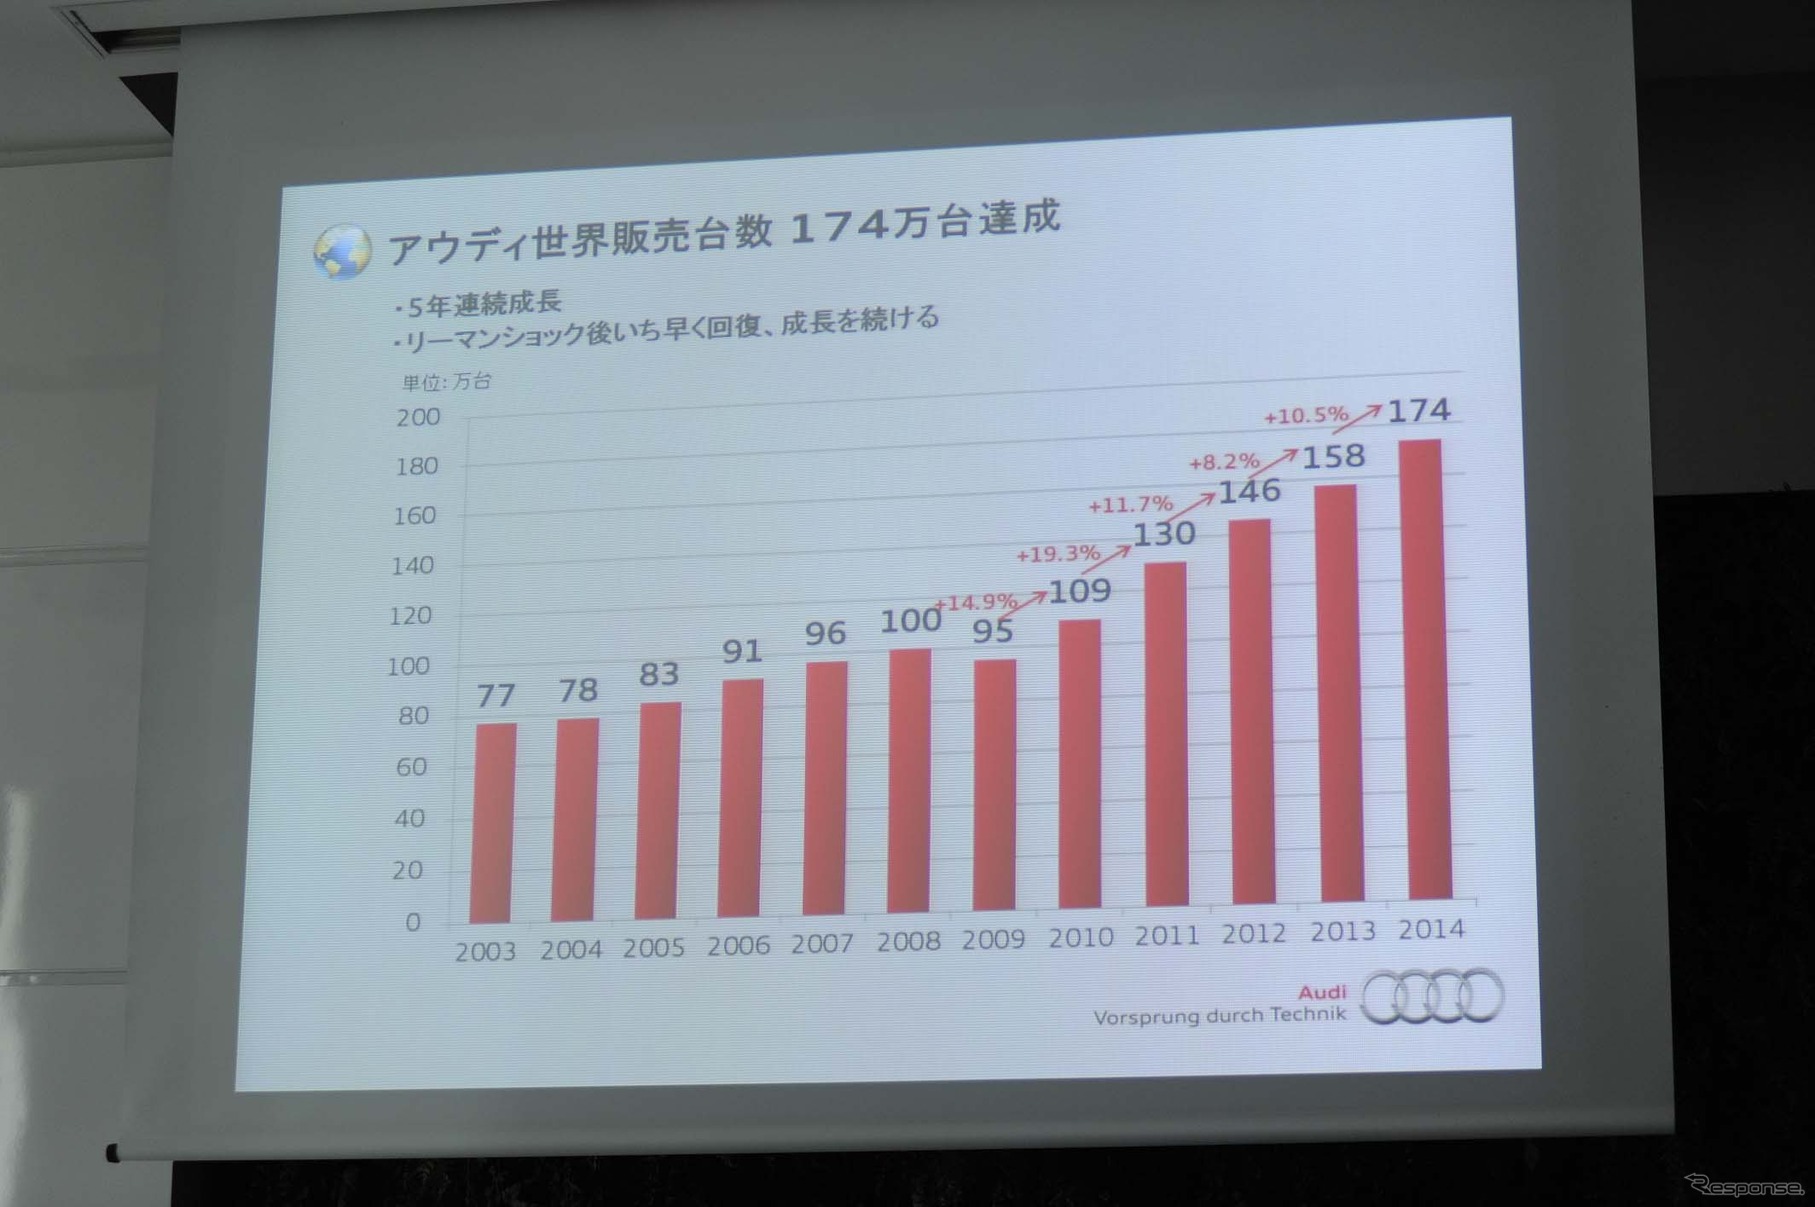 2014年のアウディ世界販売台数は174万台。5年連続での成長となった。